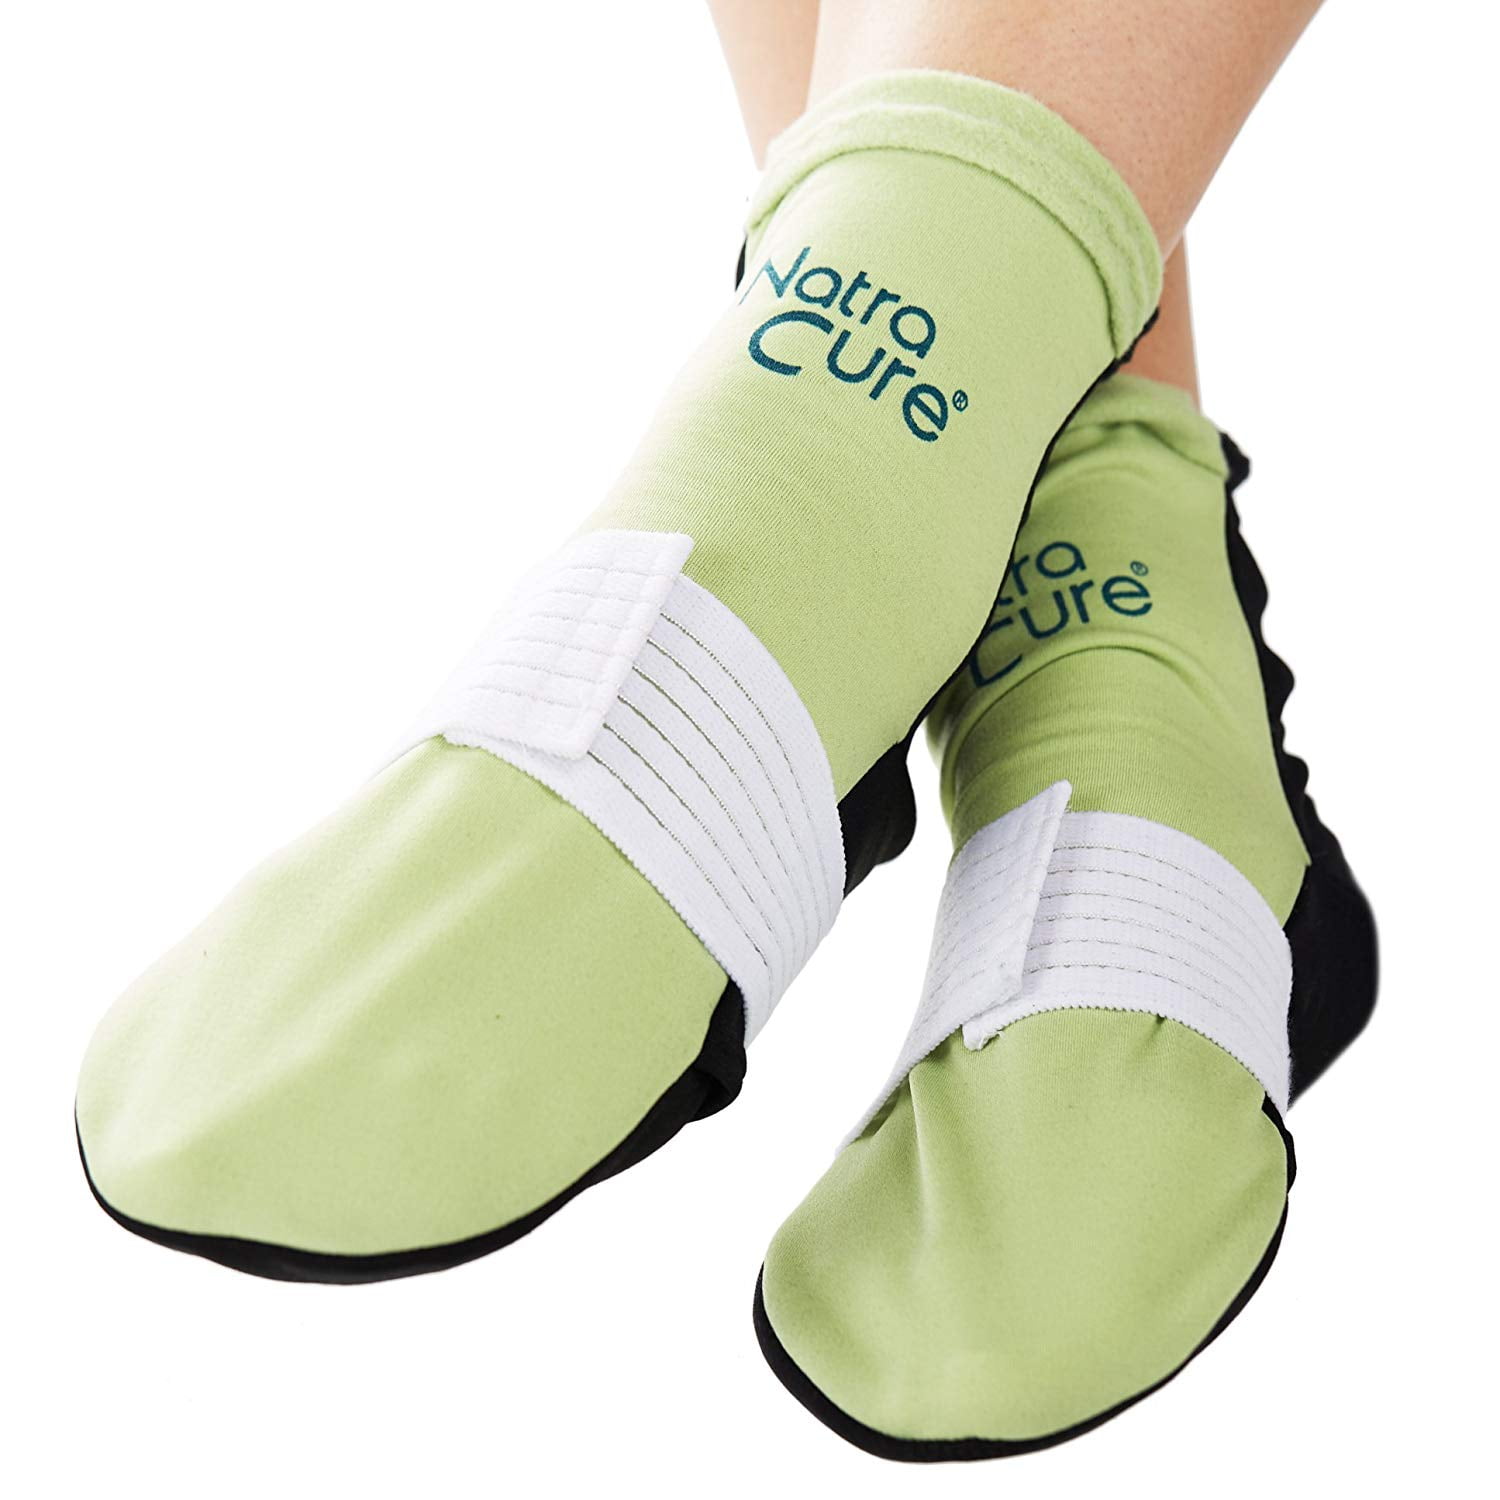  Plantar Fasciitis Socks for Women & Men - Best Foot